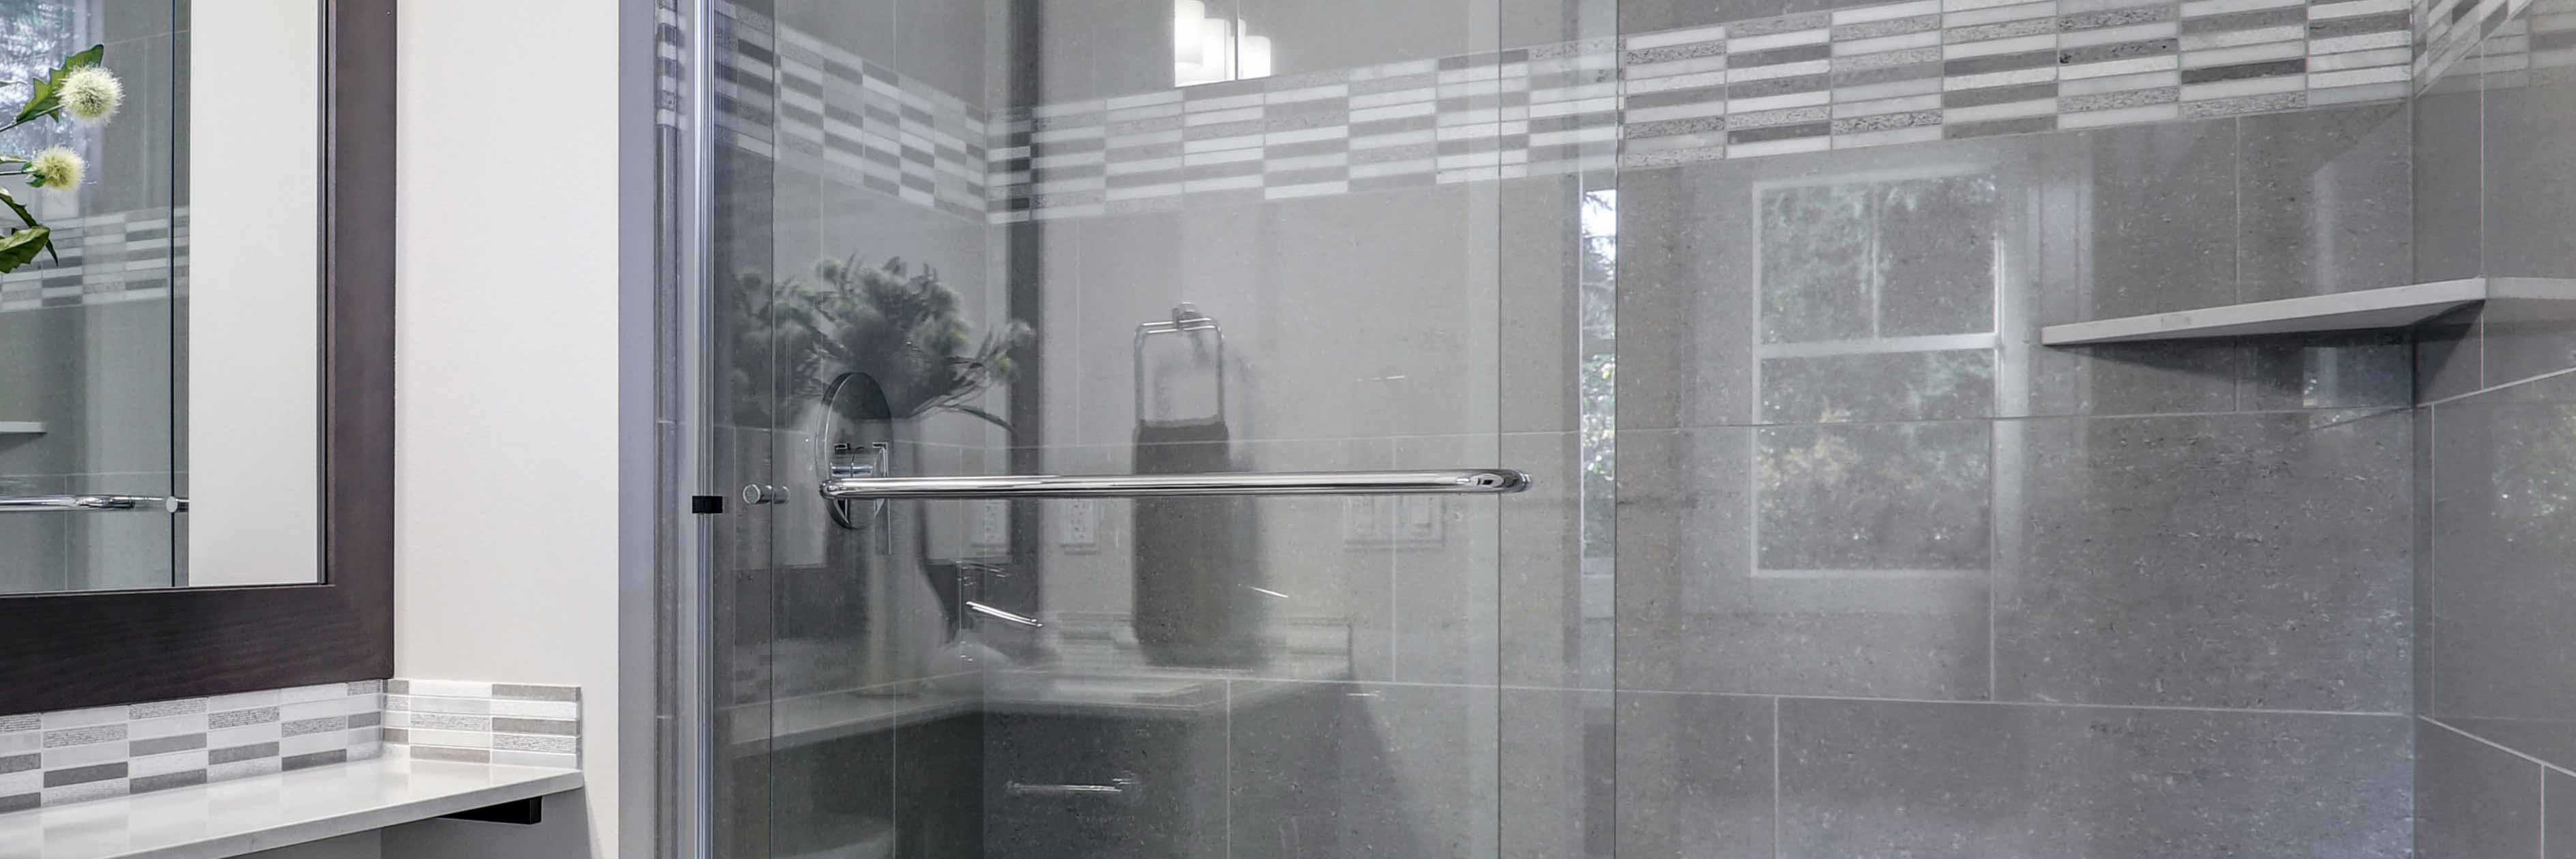 Shower Door Installation Cost